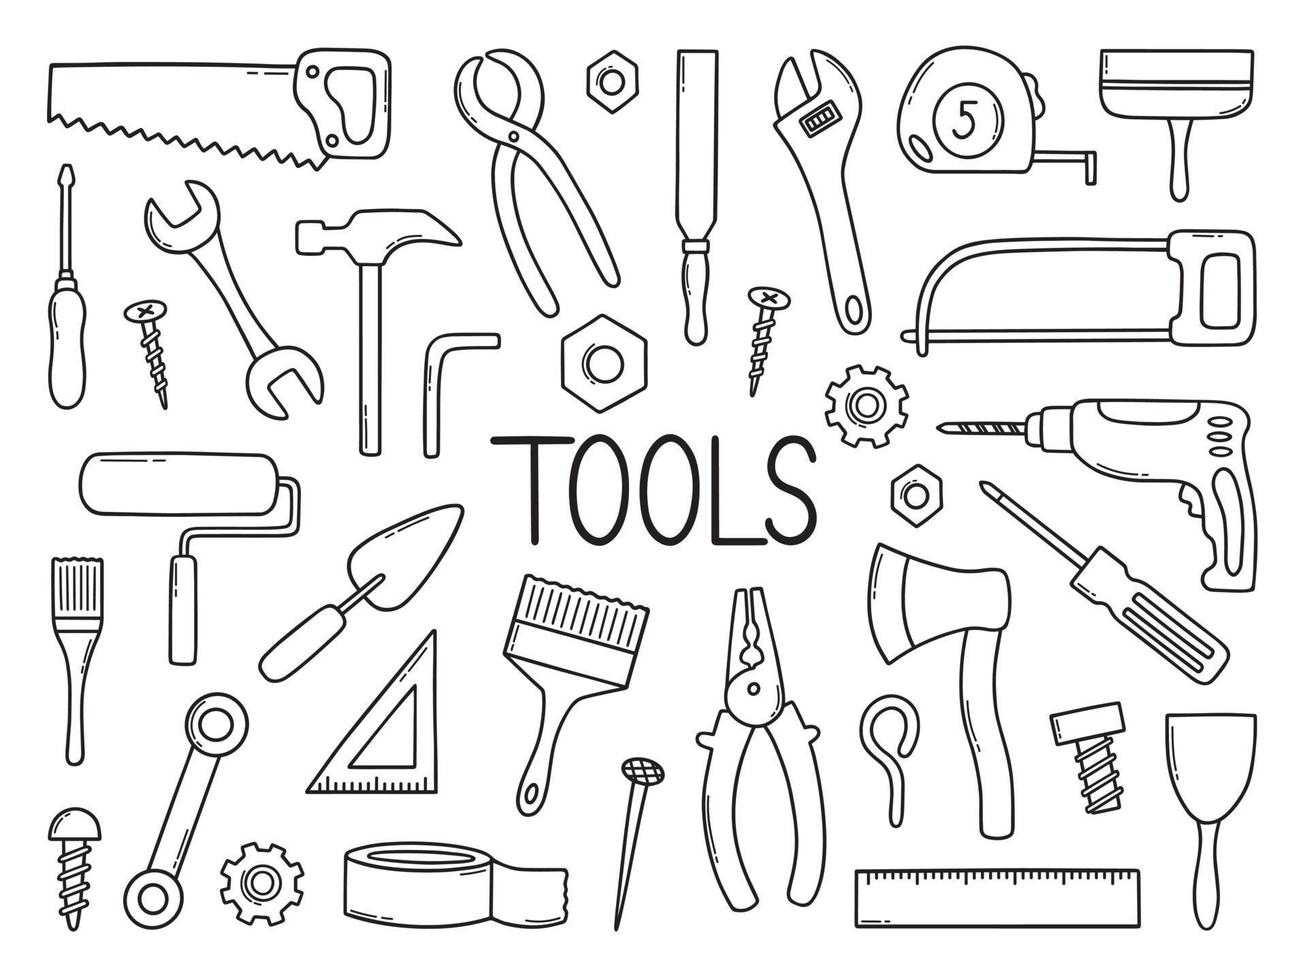 handritad uppsättning byggverktyg doodle olika arbets- och byggverktyg i skissstil. såg, hammare, skiftnyckel, skruv, borr. vektor illustration isolerad på vit bakgrund.